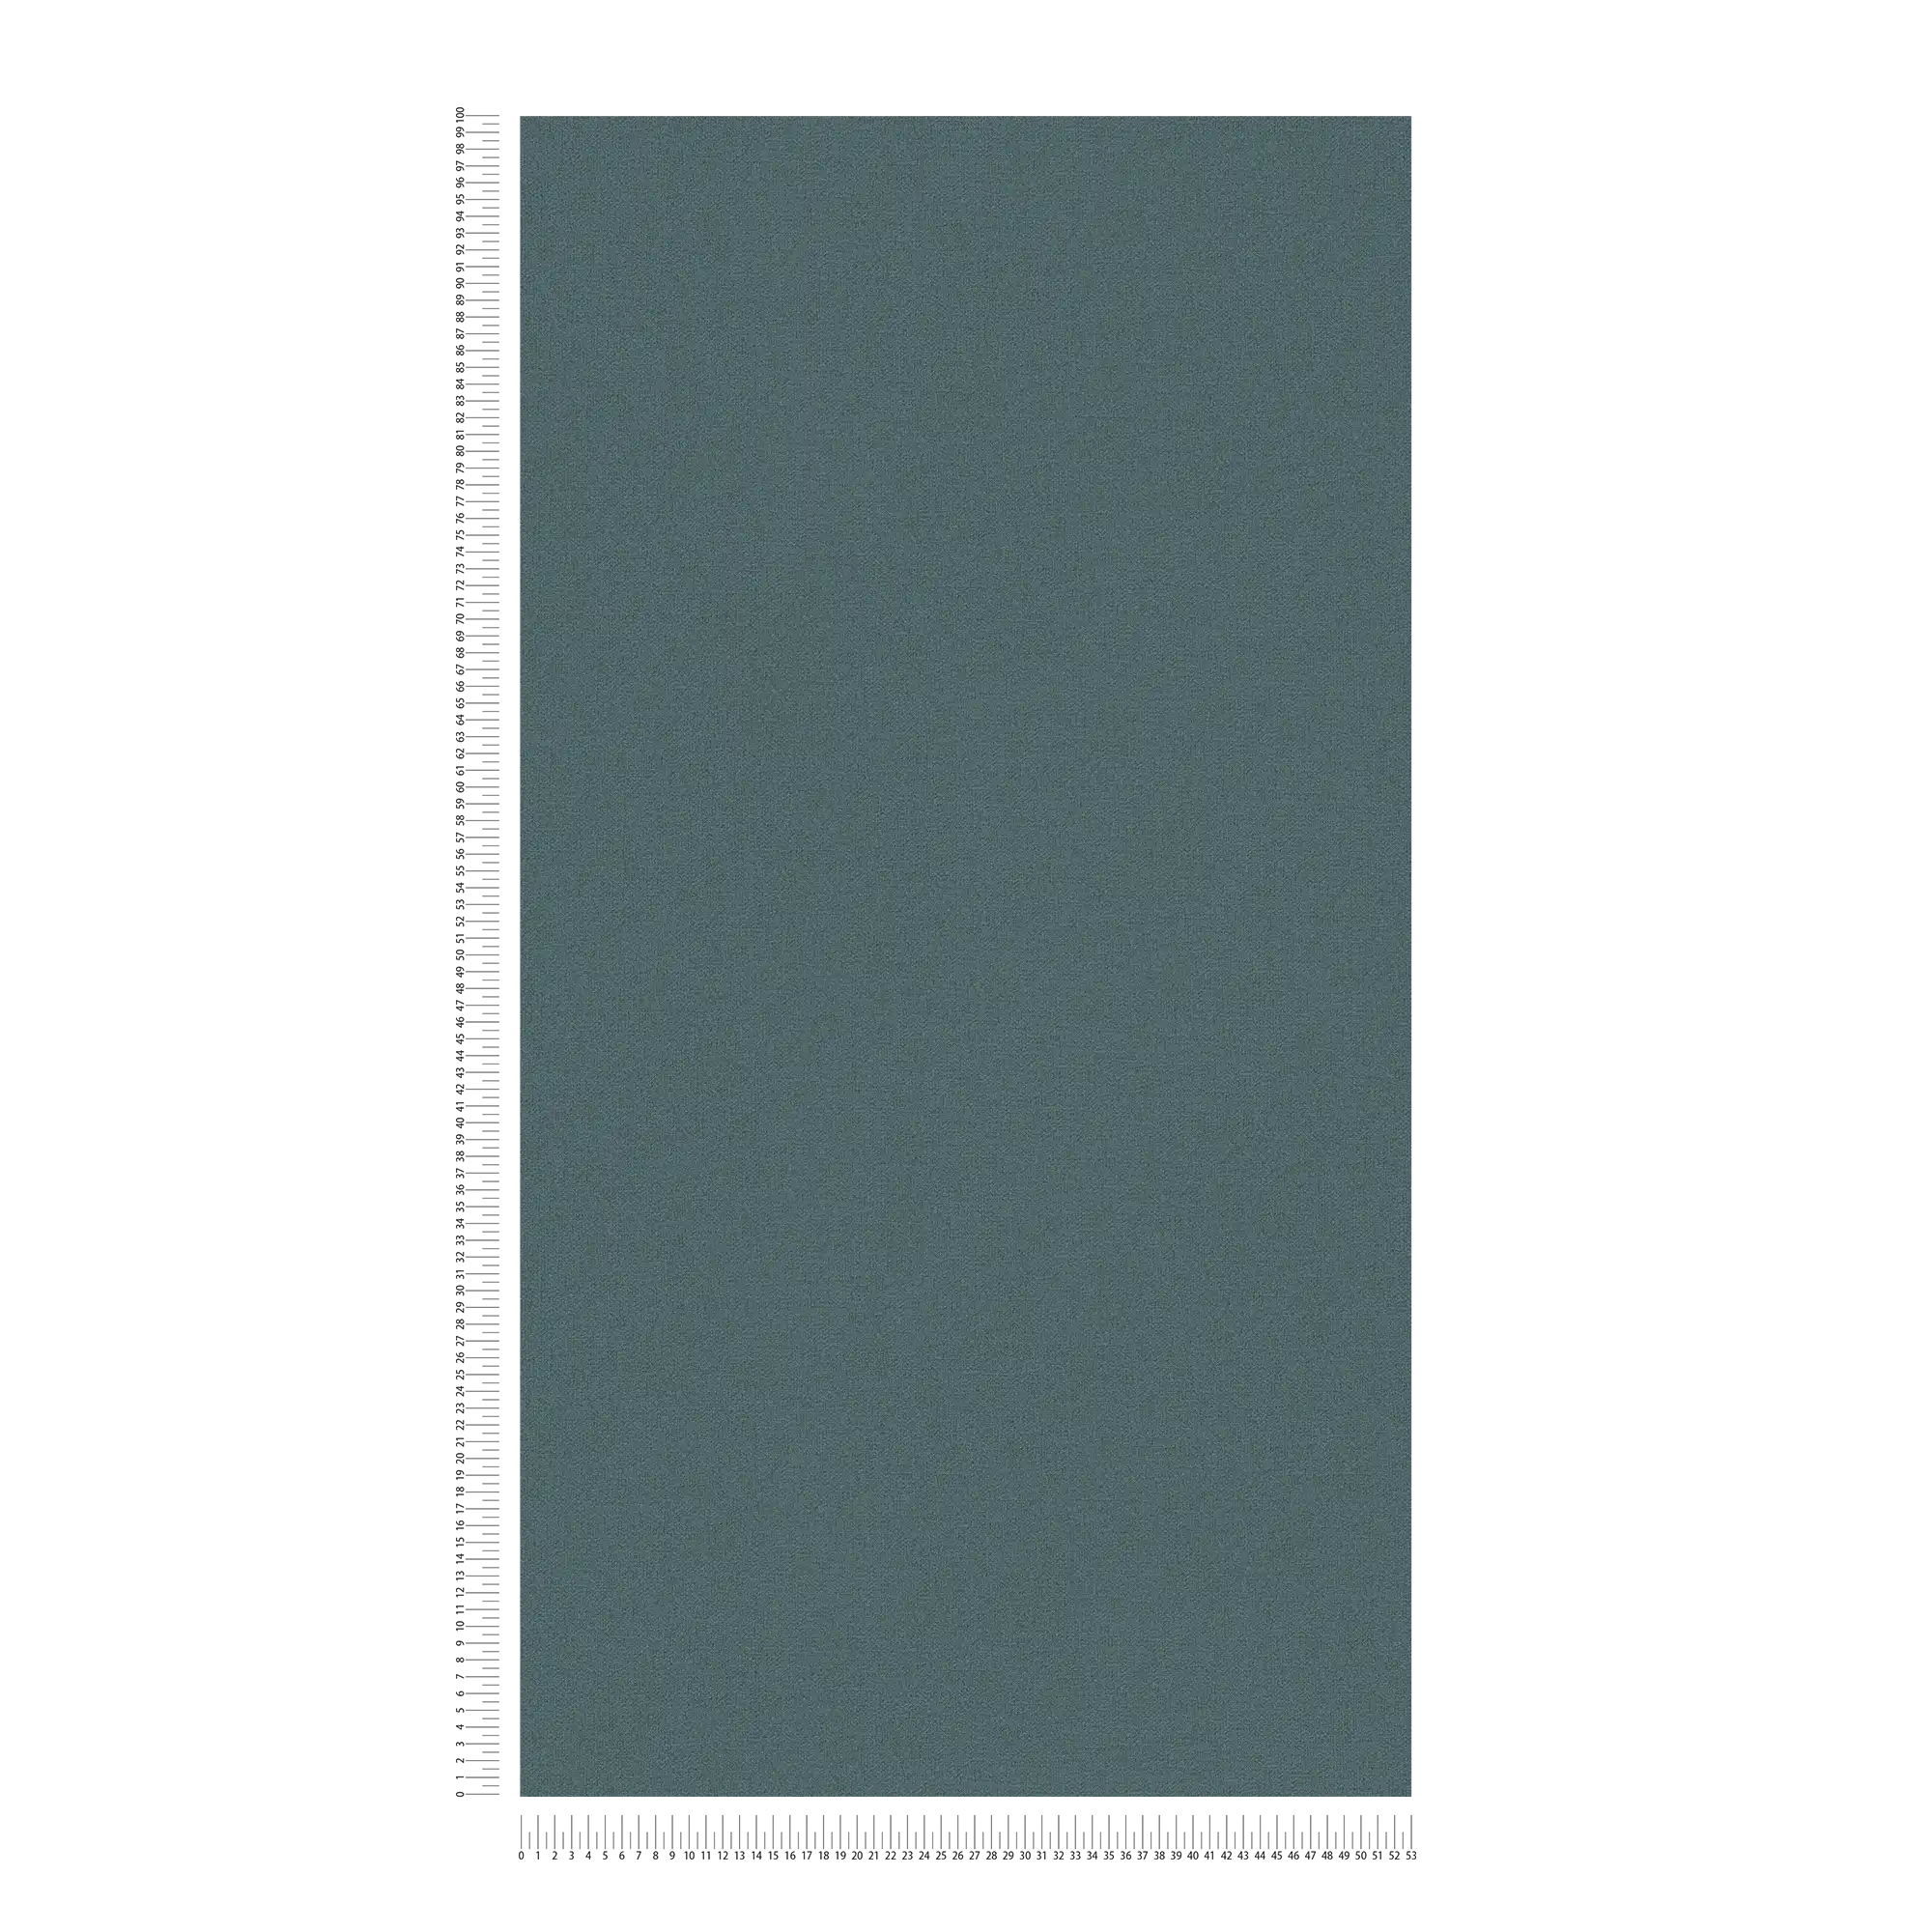             Papier peint intissé uni aspect lin sans PVC - bleu, gris
        